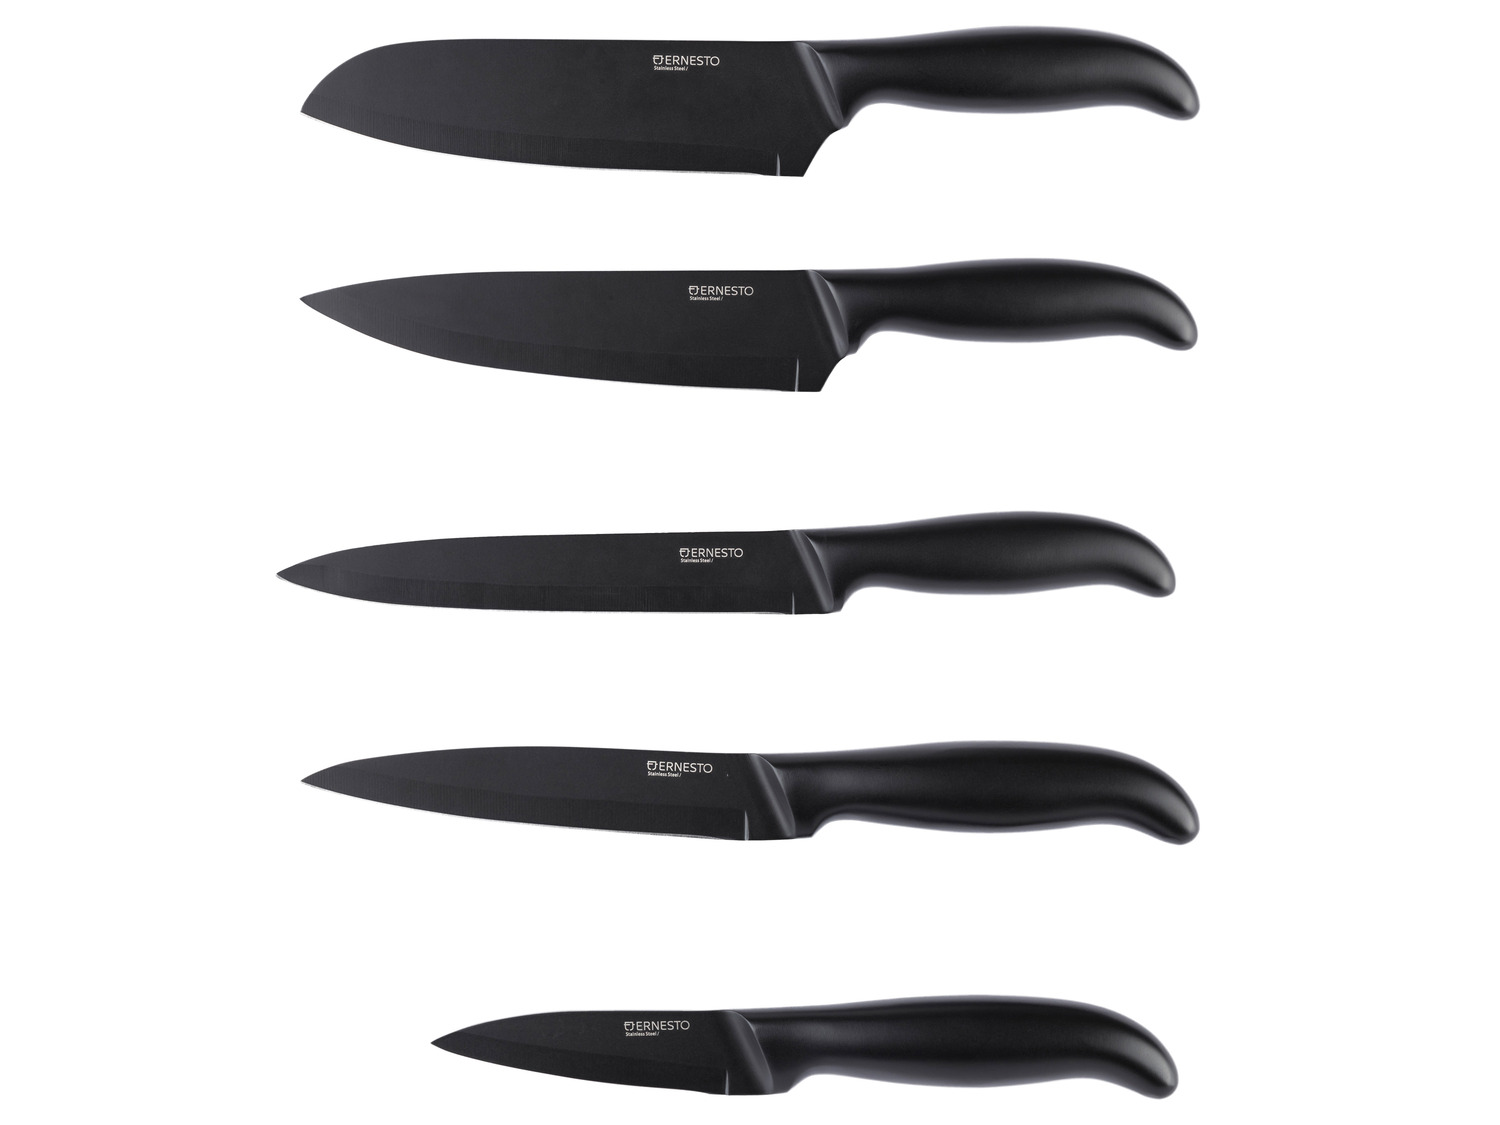 Edelstahl, schwarz | ERNESTO® Messer aus LIDL